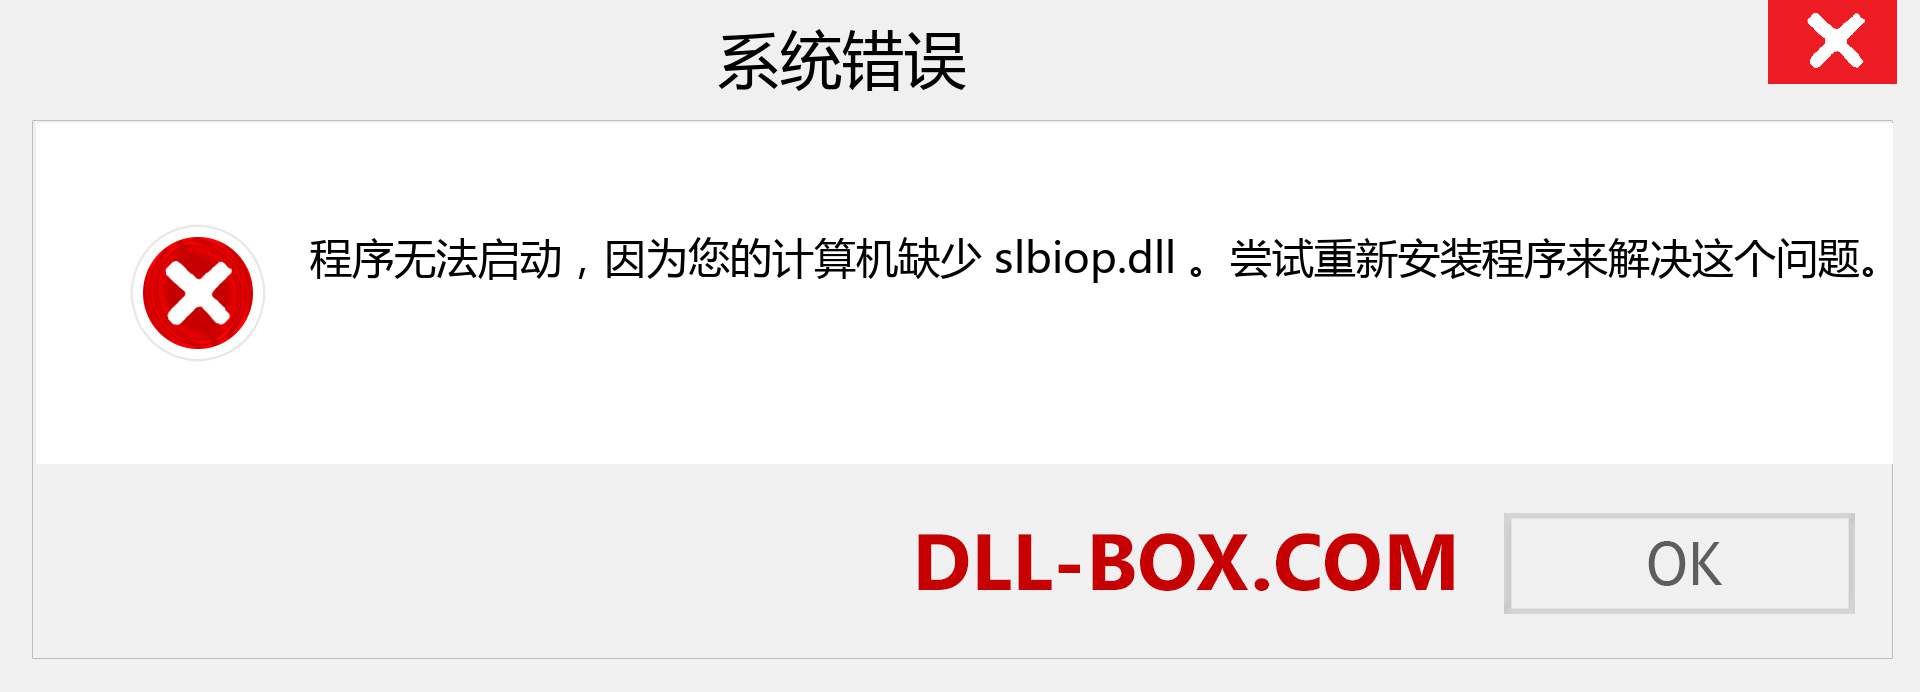 slbiop.dll 文件丢失？。 适用于 Windows 7、8、10 的下载 - 修复 Windows、照片、图像上的 slbiop dll 丢失错误